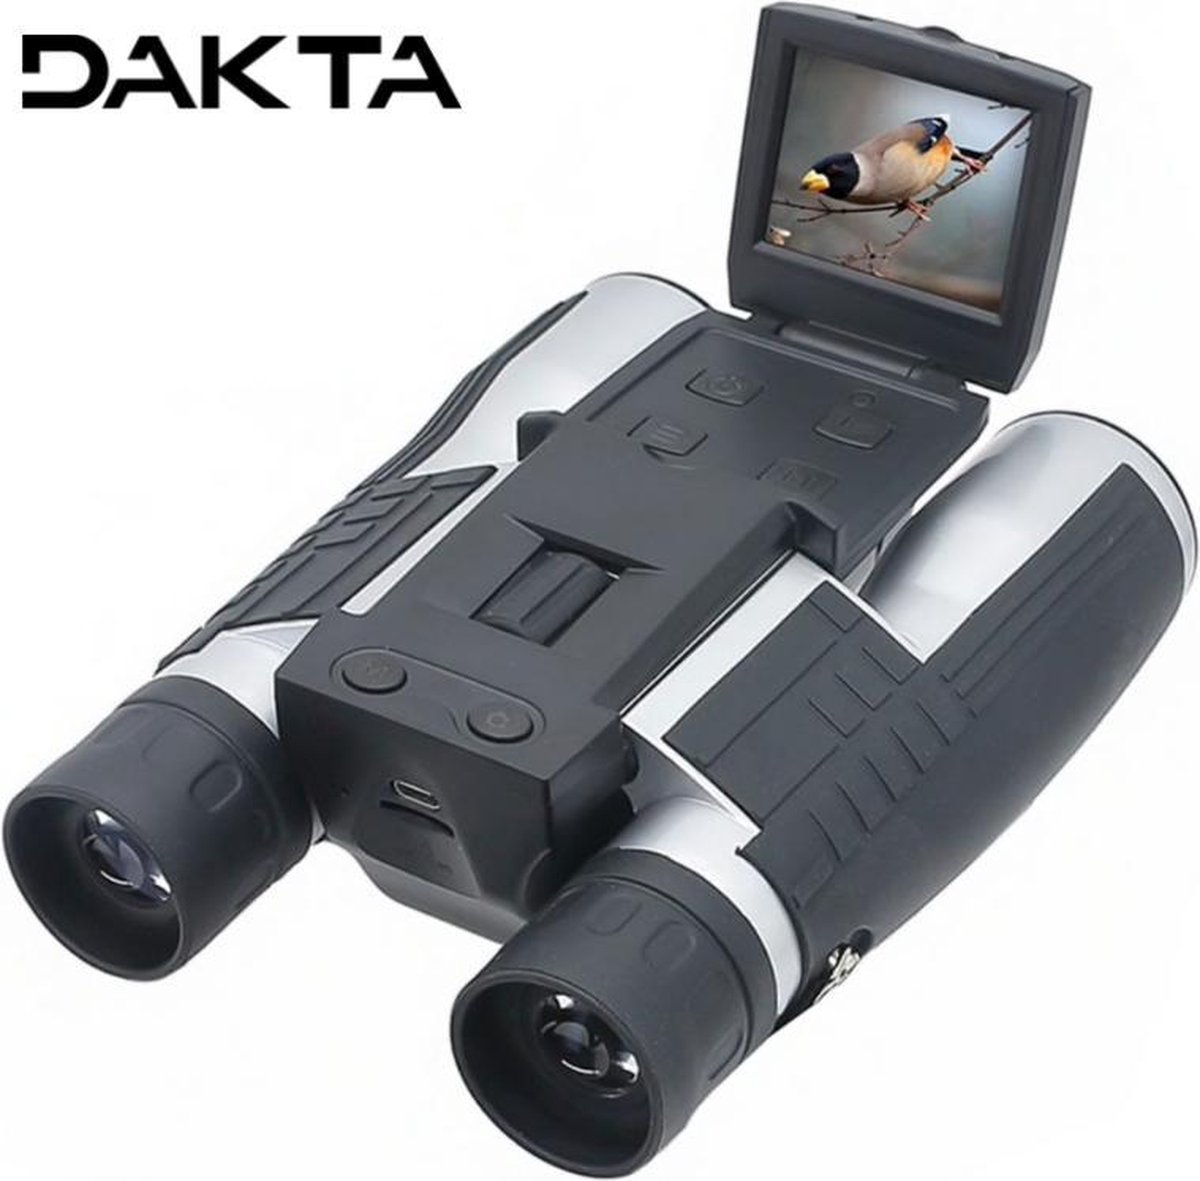 Omgekeerd Vergevingsgezind voertuig Dakta® Verrekijker met Camera | Digitaal | Vogelspotten | Volwassene /  Kinderen | met... | bol.com